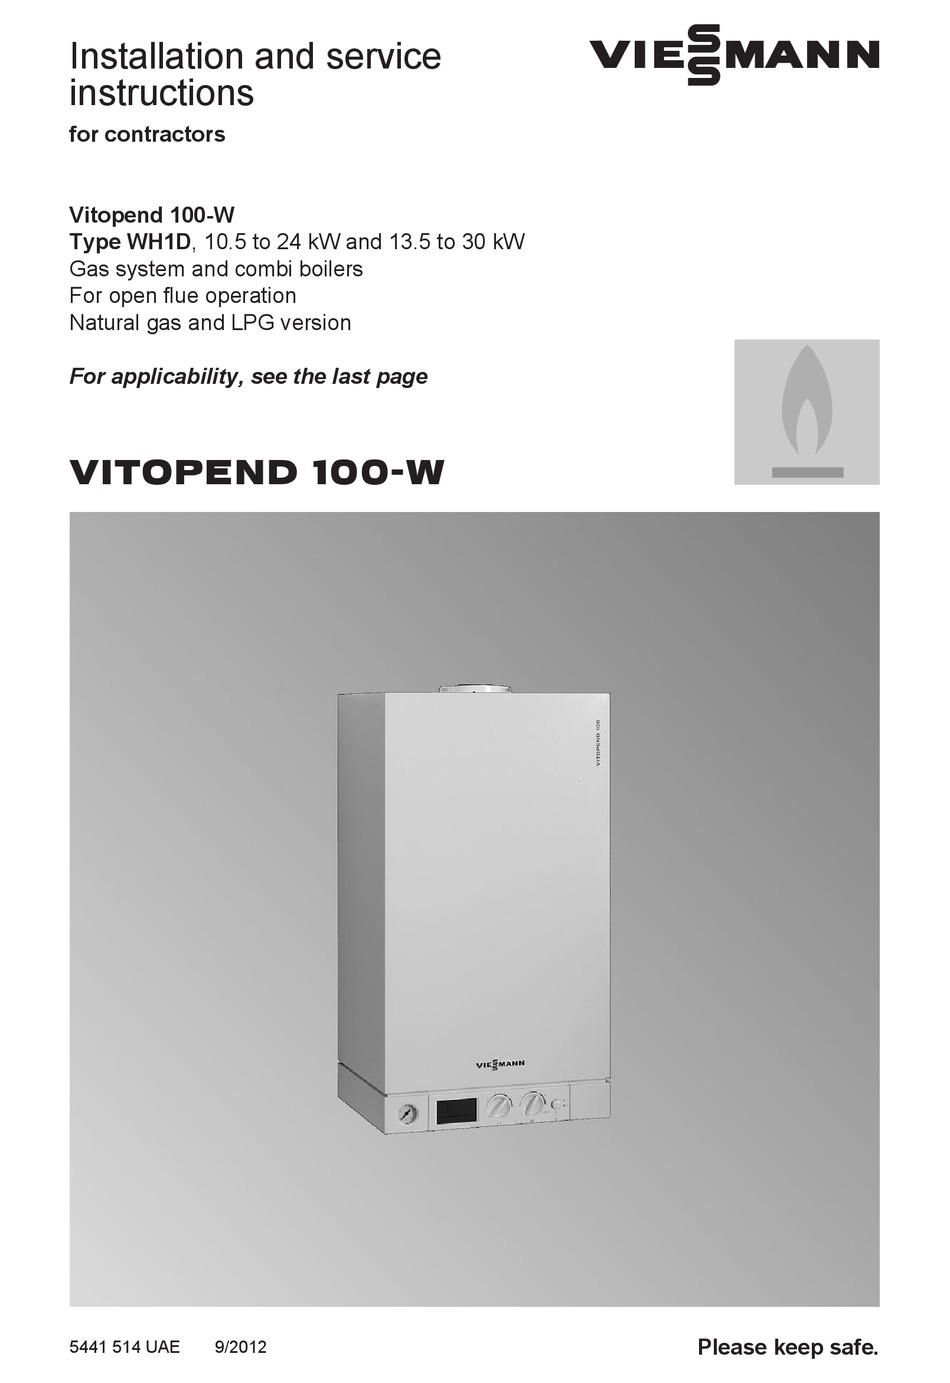 Viessmann Vitopend 100 W Installation, Viessmann Vitodens 100 System Boiler Wiring Diagram